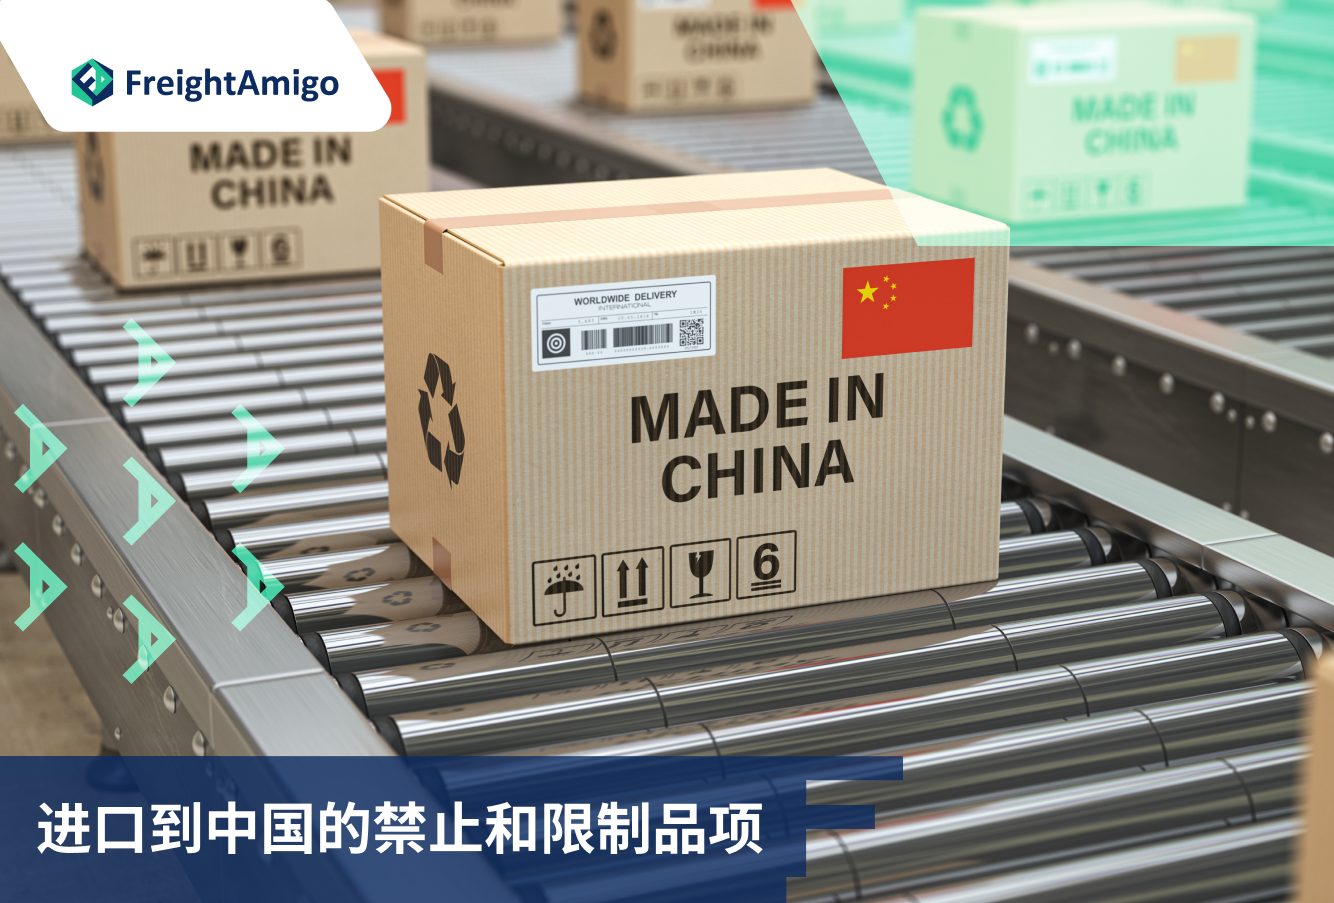 进口到中国 | 禁止和限制品项 | FreightAmigo